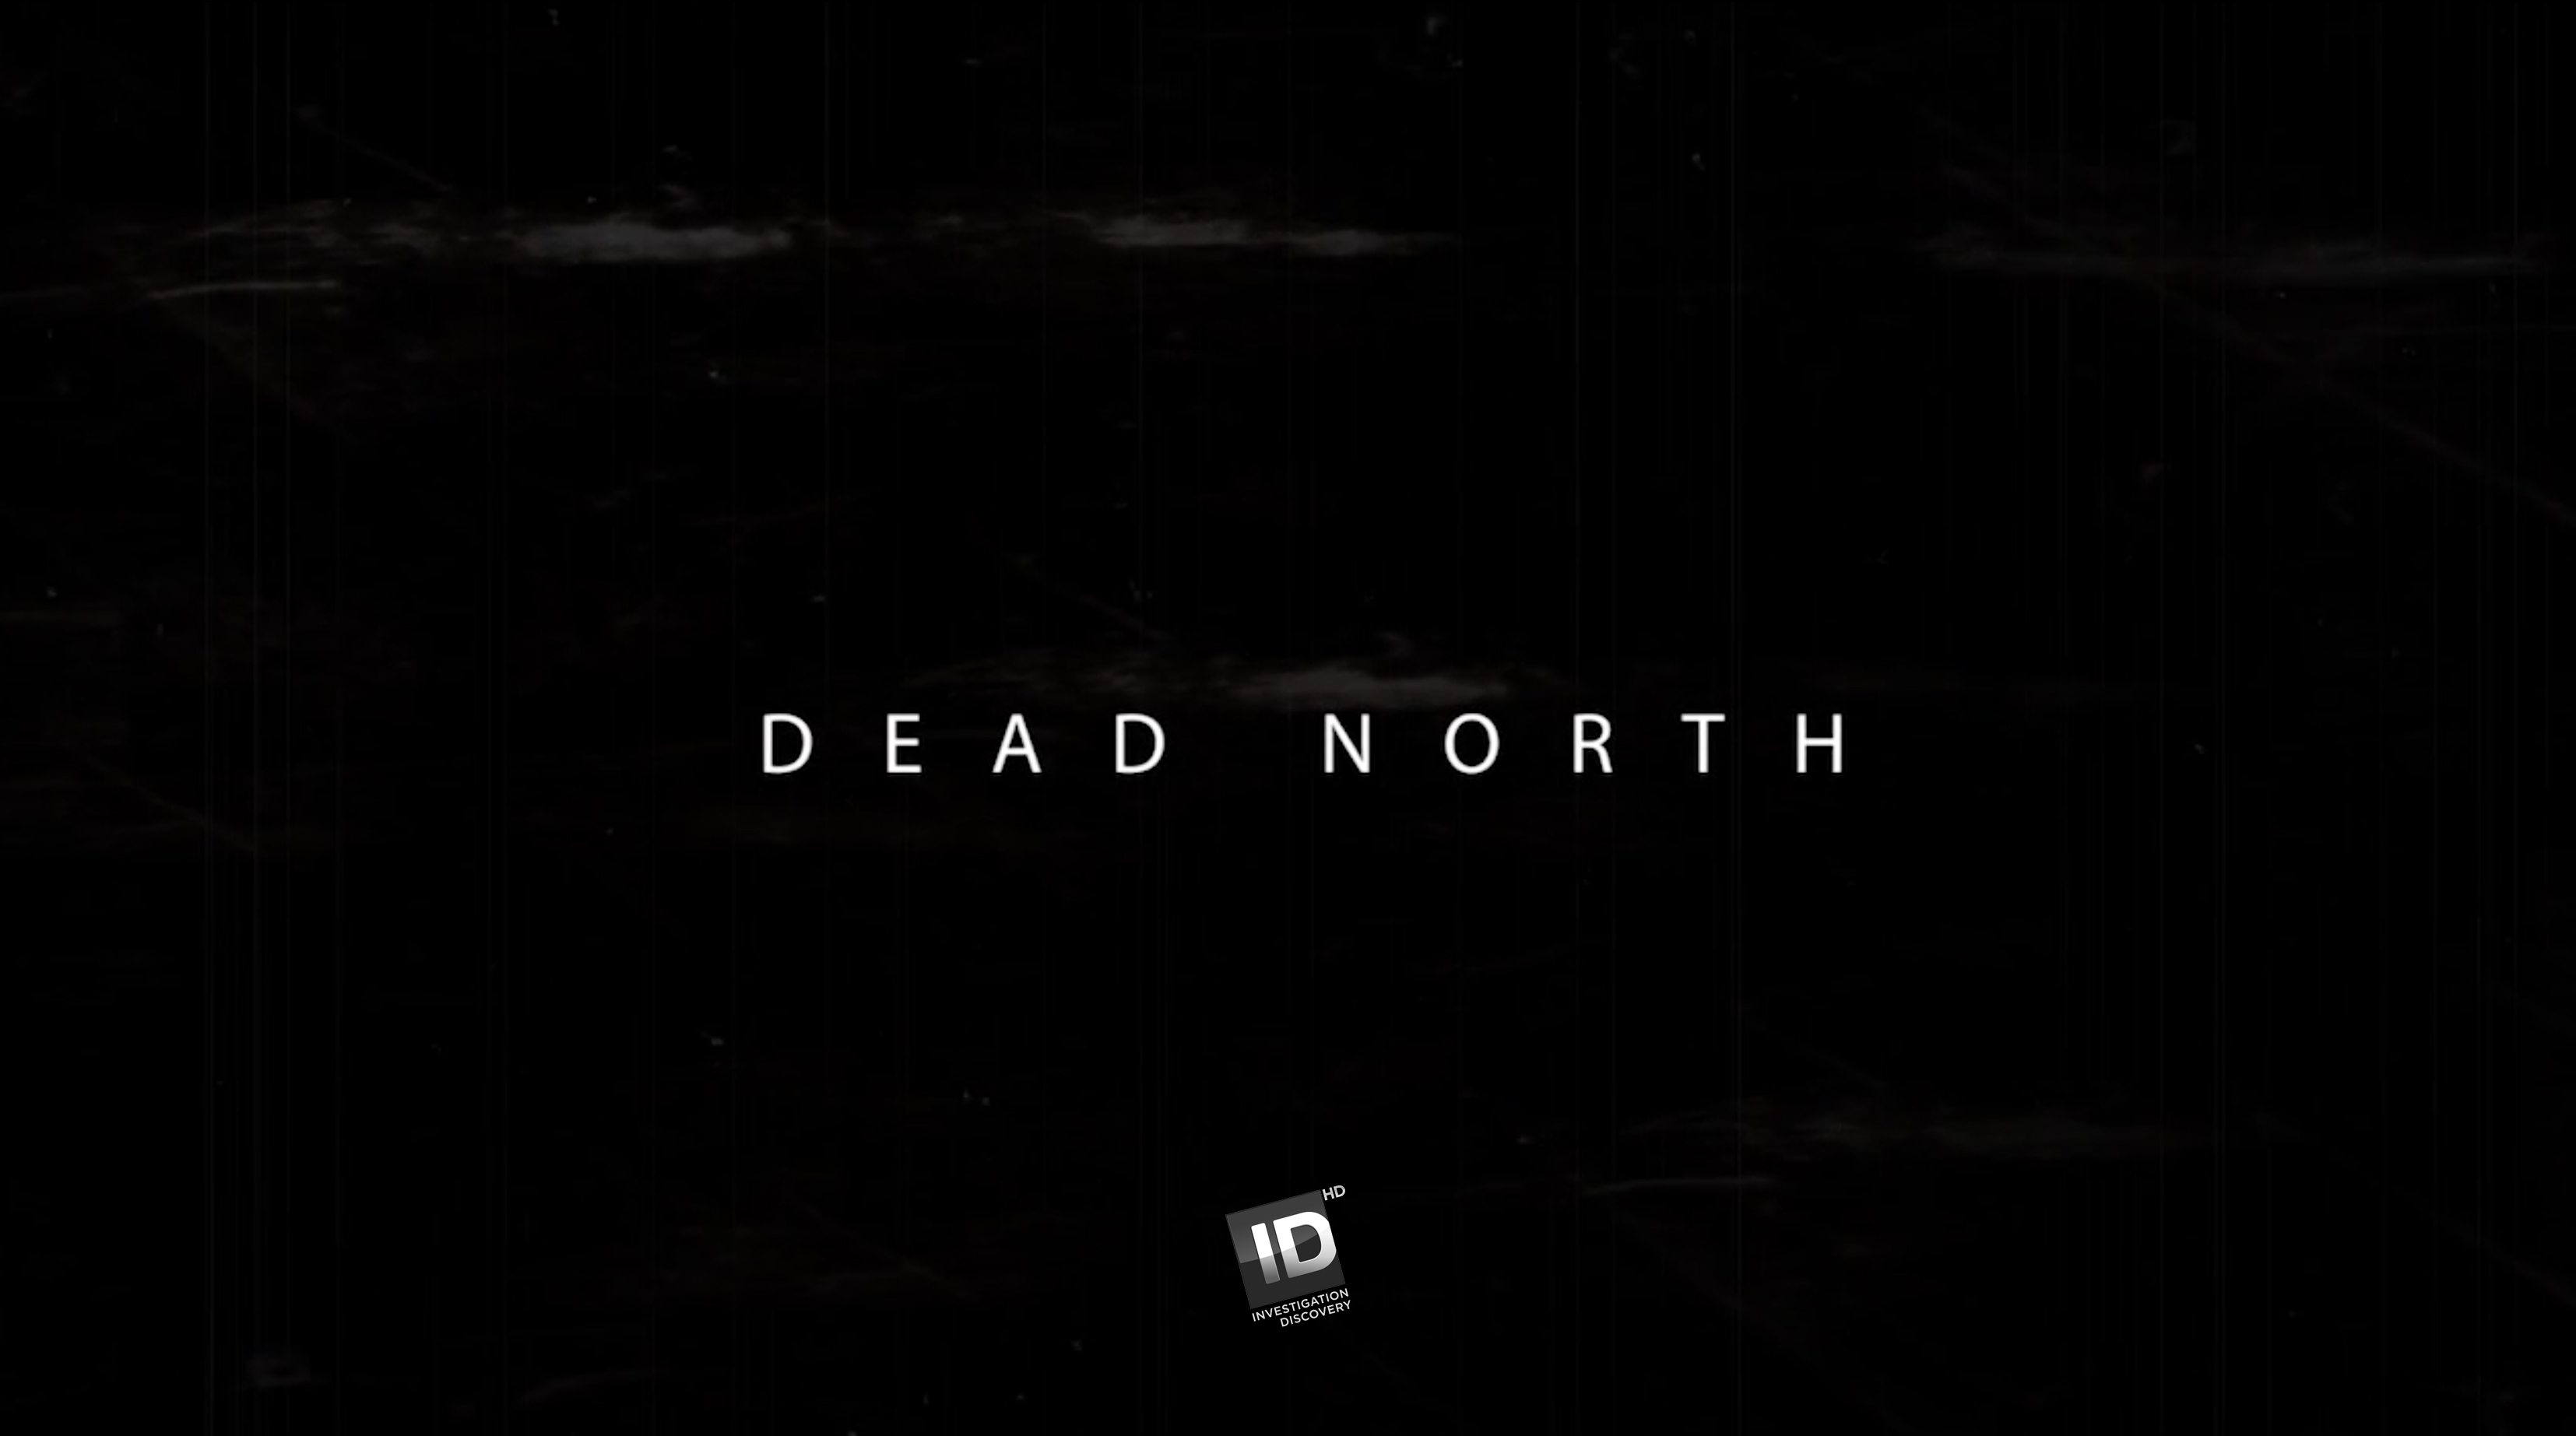 DEAD NORTH